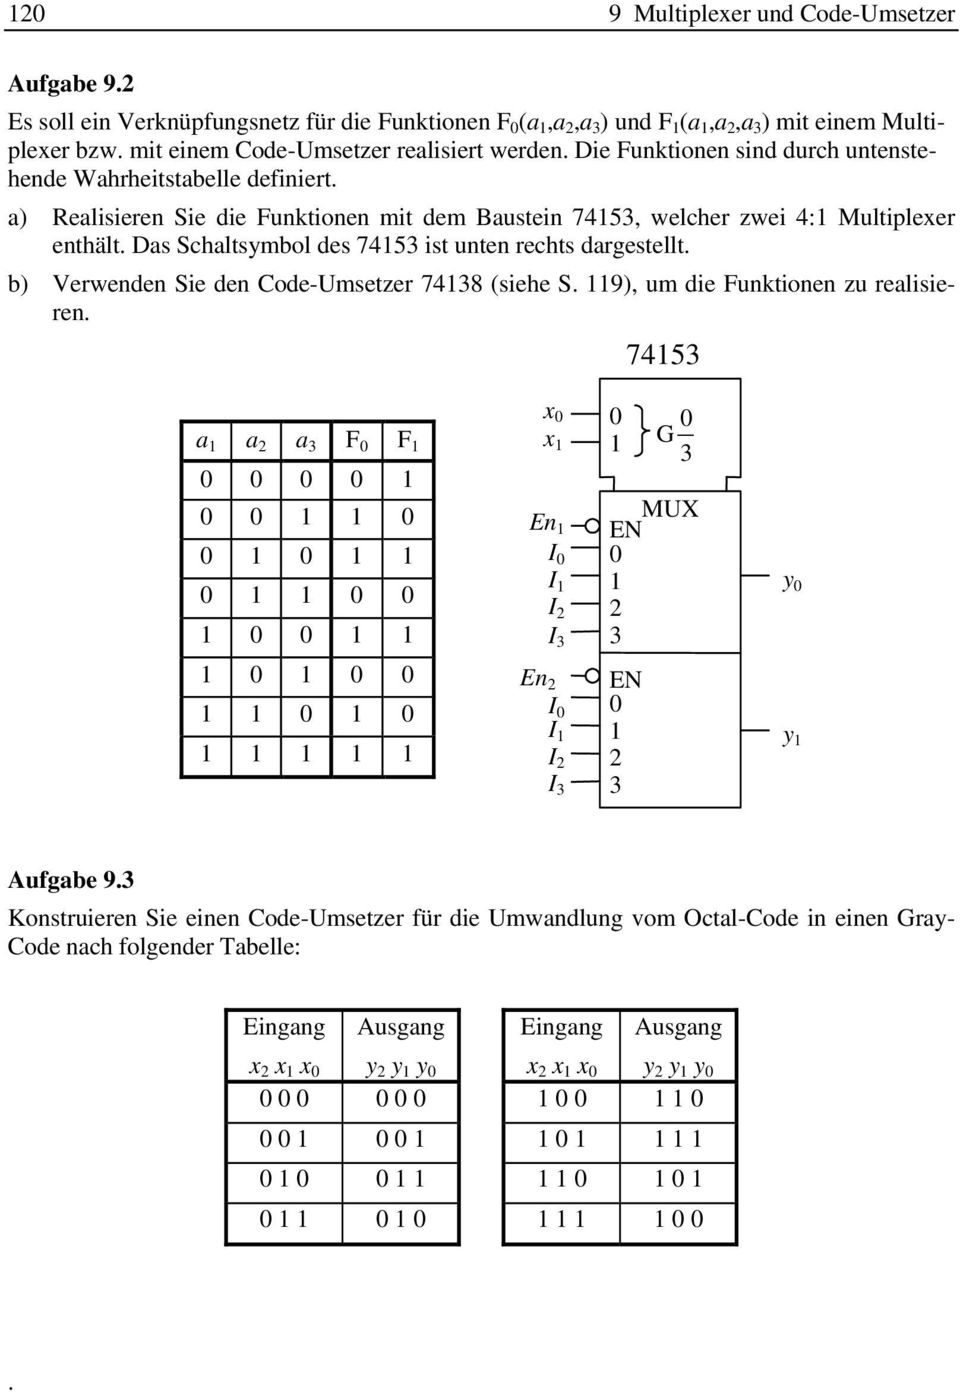 a) Realisieren Sie die Funktionen mit dem Baustein 75, welcher zwei : Multiplexer enthält. Das Schaltsymbol des 75 ist unten rechts dargestellt.